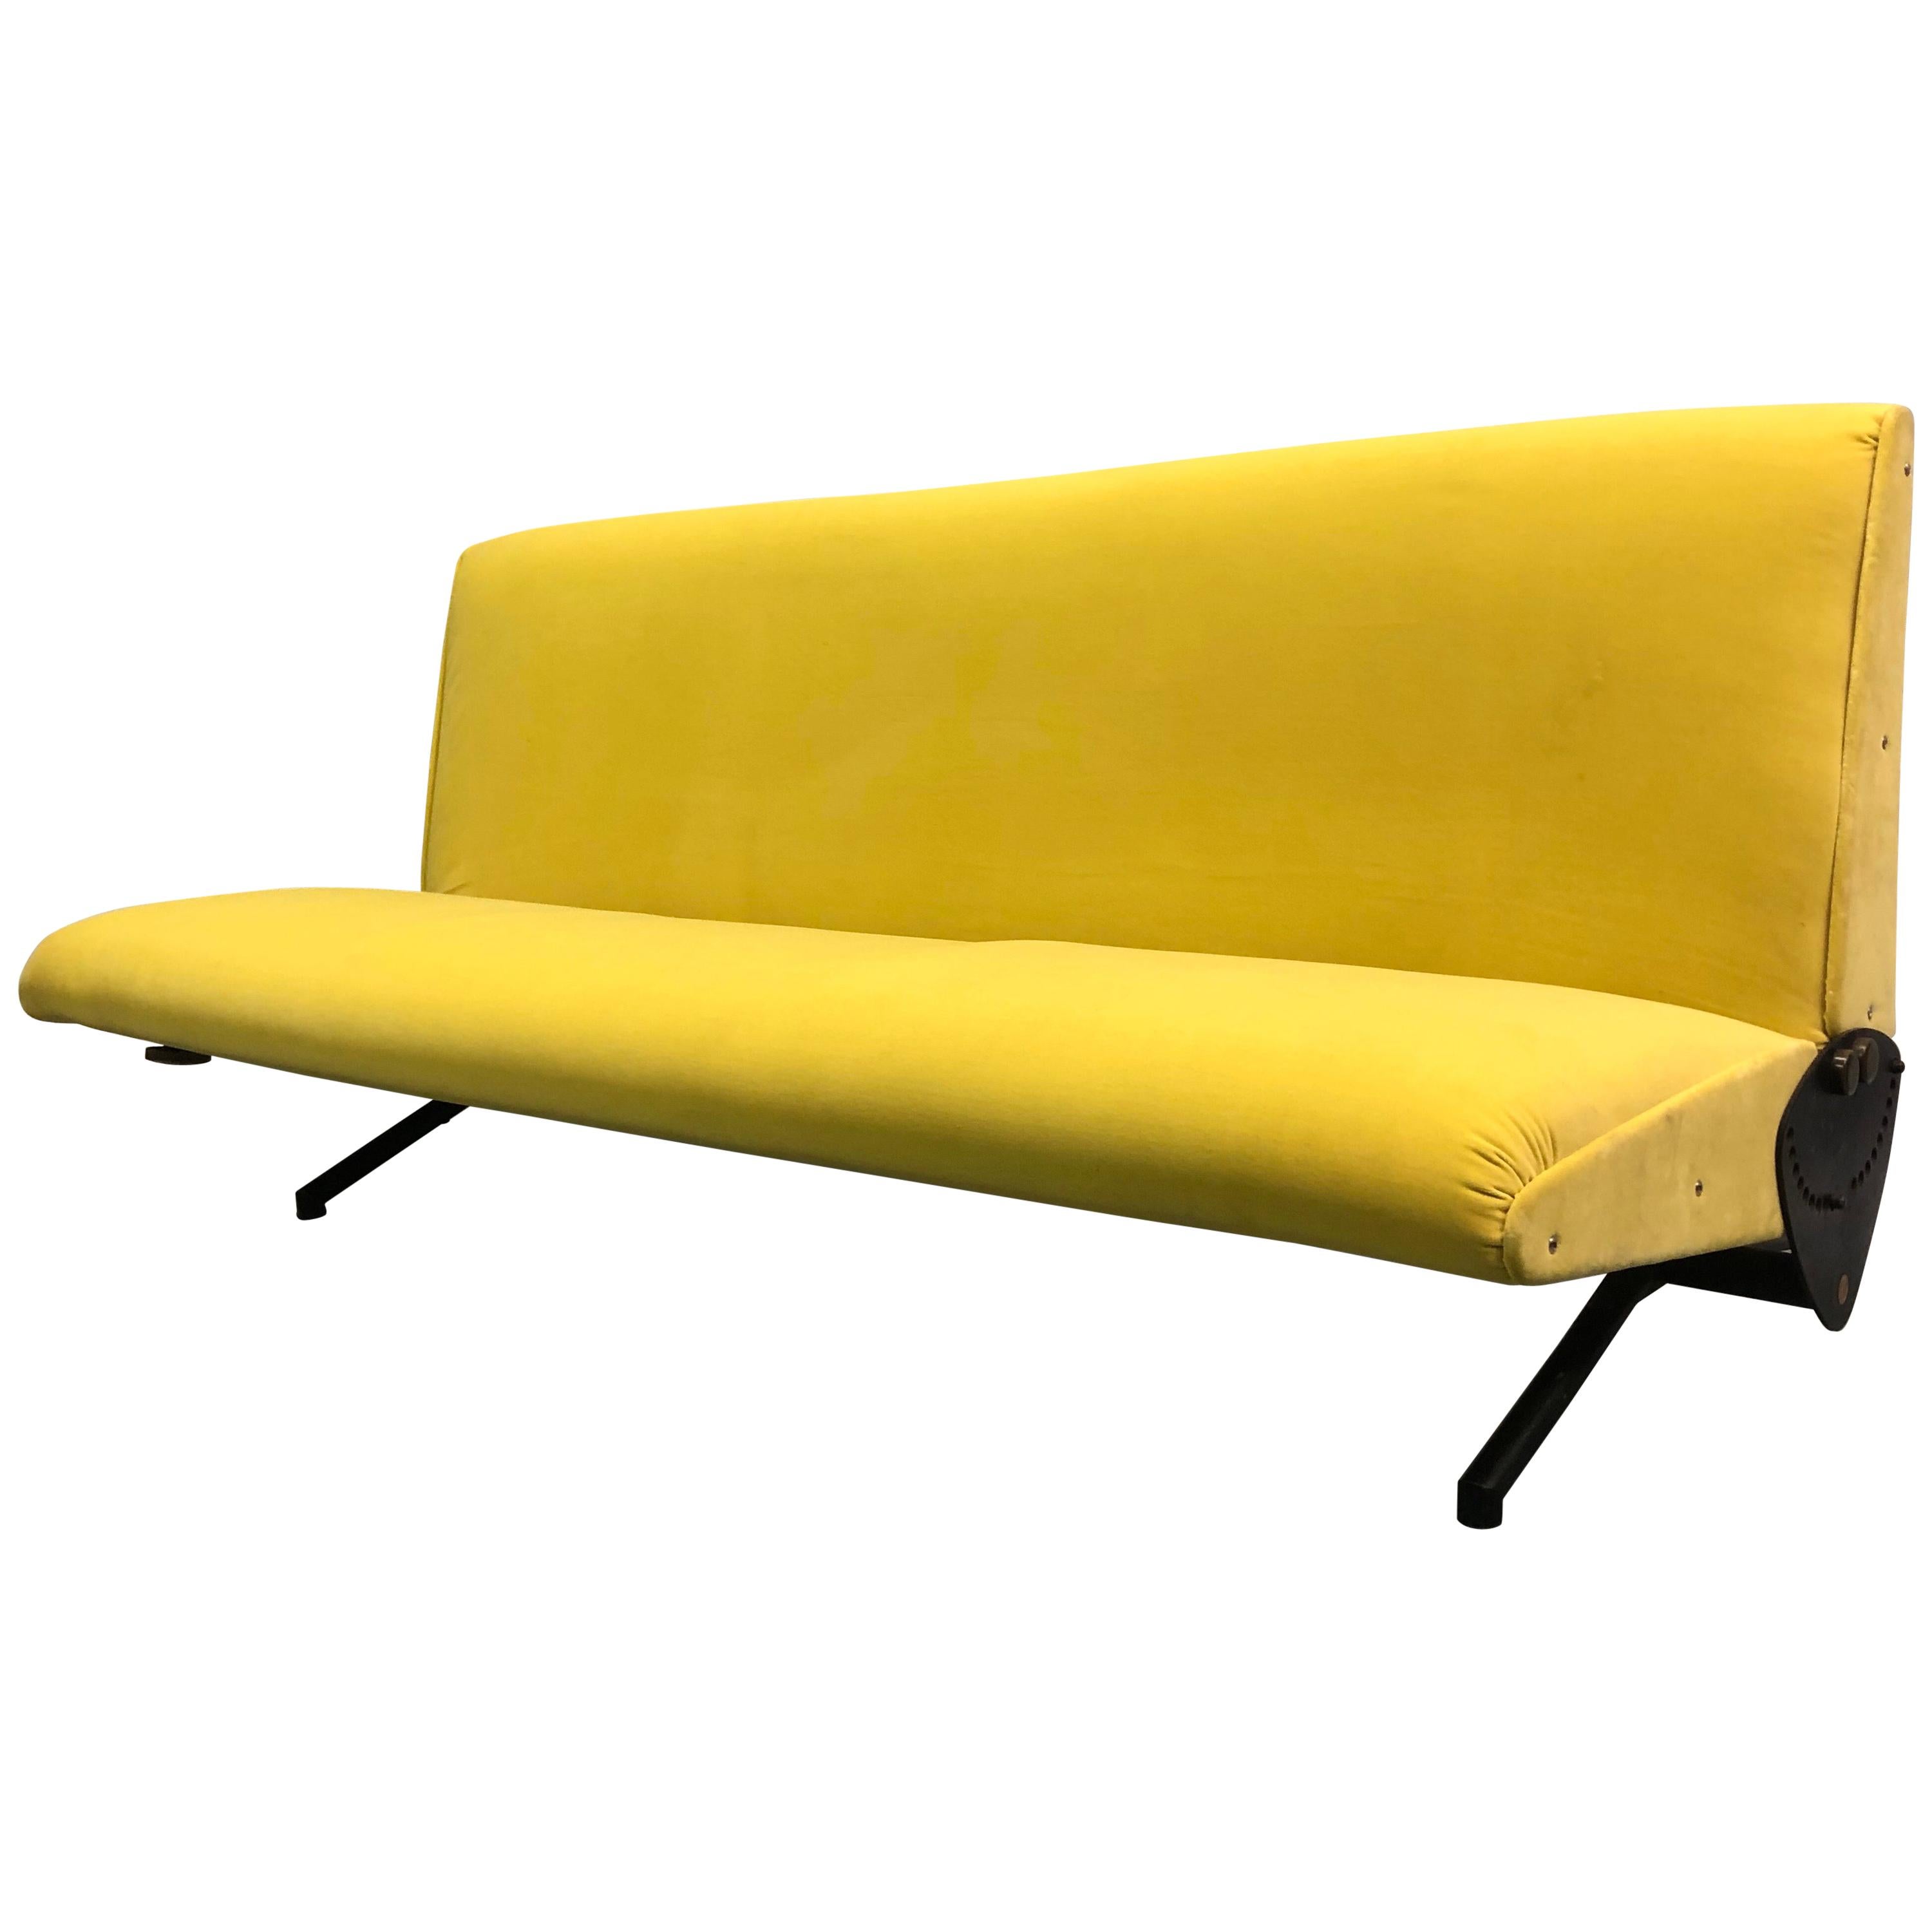 Italian Midcentury D-70 Sofa / Bed by Osvaldo Borsani & Tecno, New Upholstery